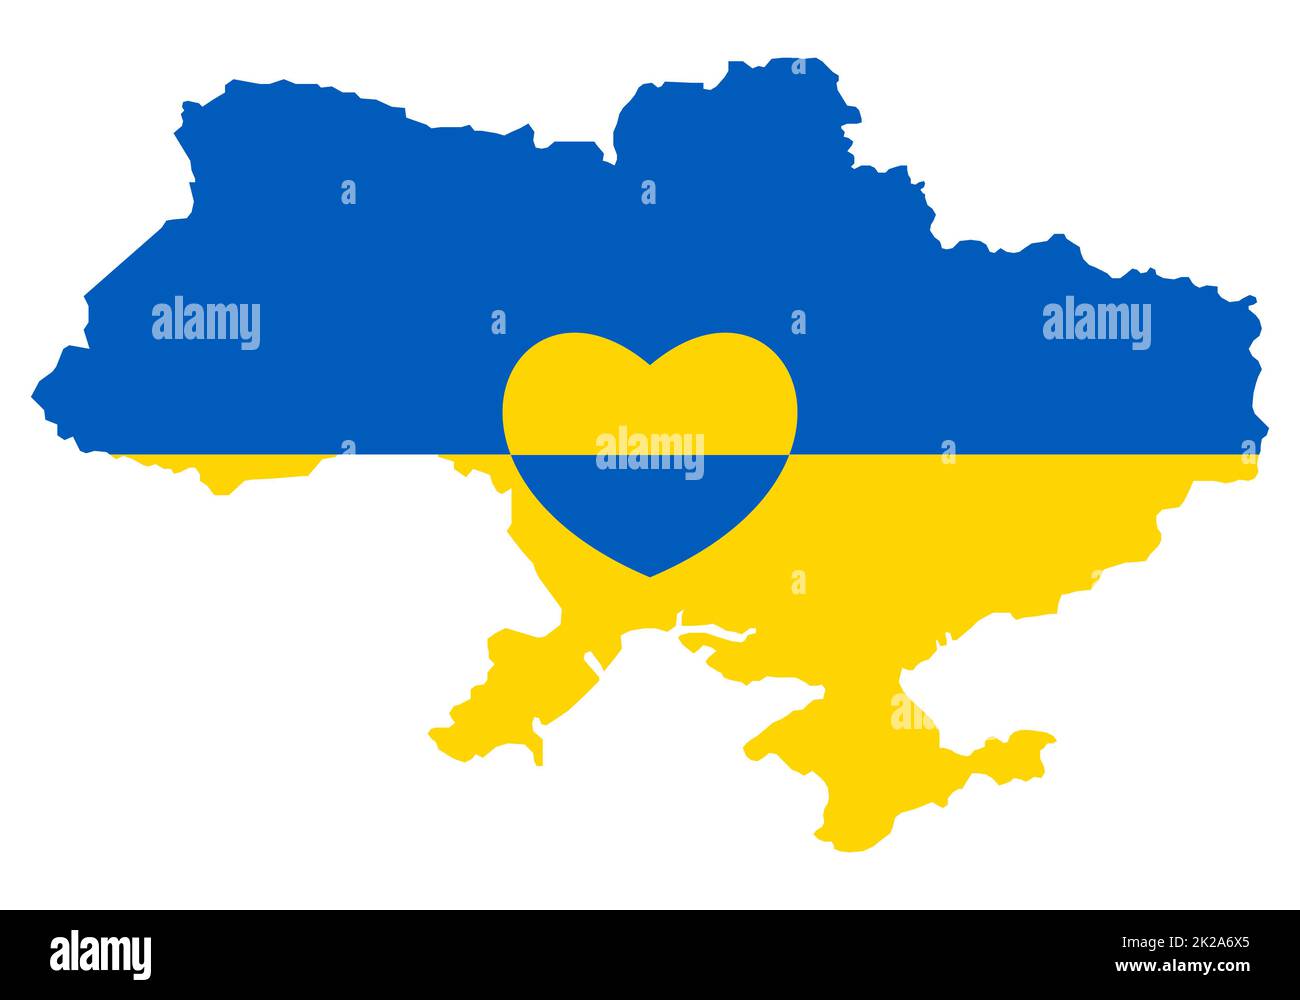 Ucraina mappa con icona del cuore. Astratta bandiera patriottica ucraina con simbolo d'amore. Idea concettuale blu e gialla - con l'Ucraina nel suo cuore. Sostegno al paese durante l'occupazione. Stop alla guerra. Foto Stock